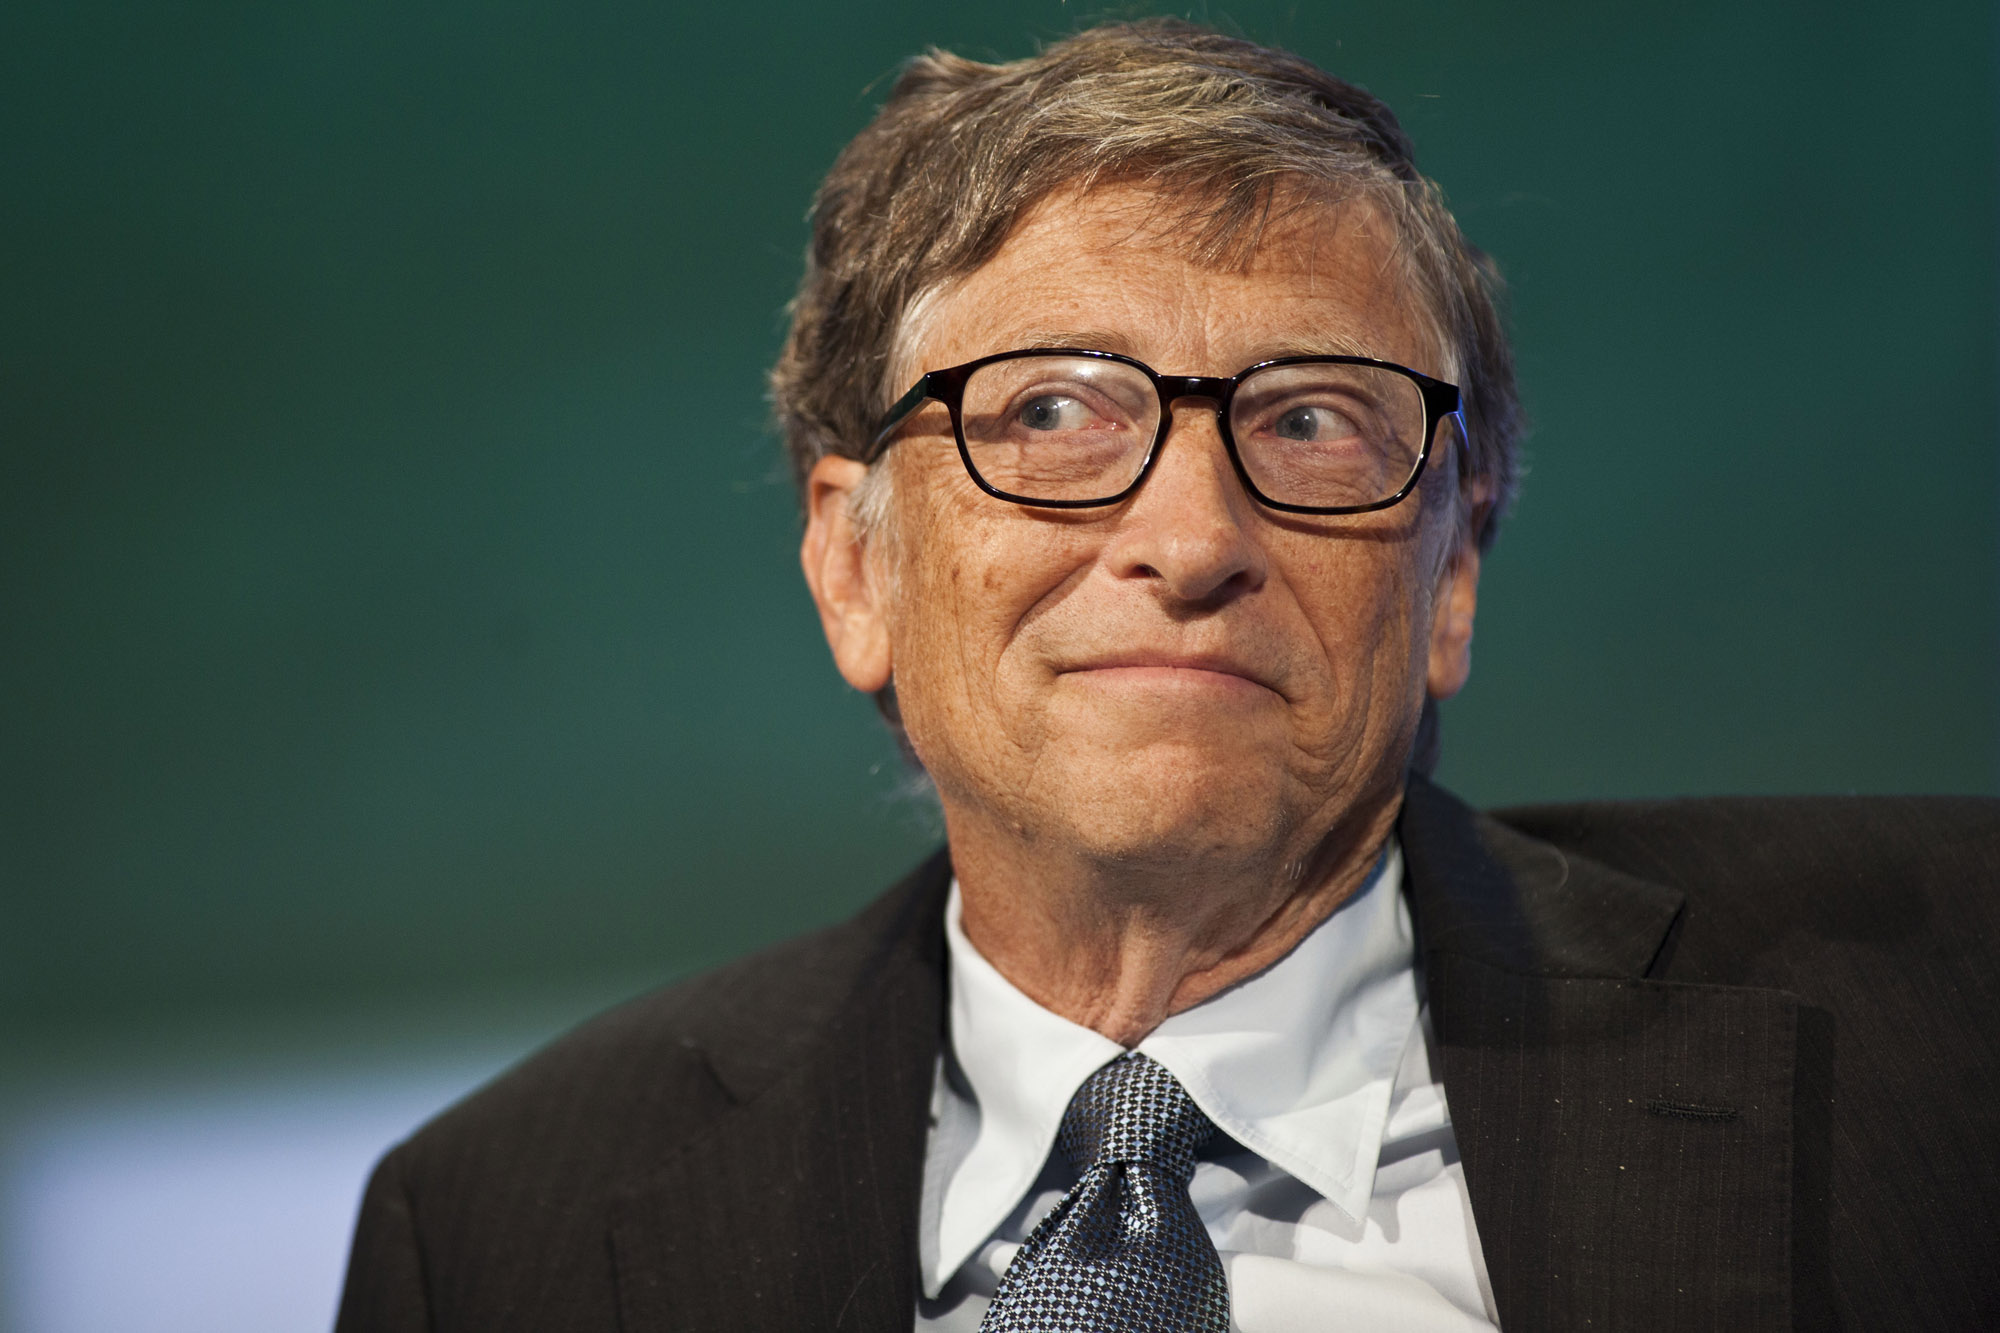 ¿Bill Gates responsable del coronavirus? El multimillonario respondió a las teorías conspirativas que lo acusan